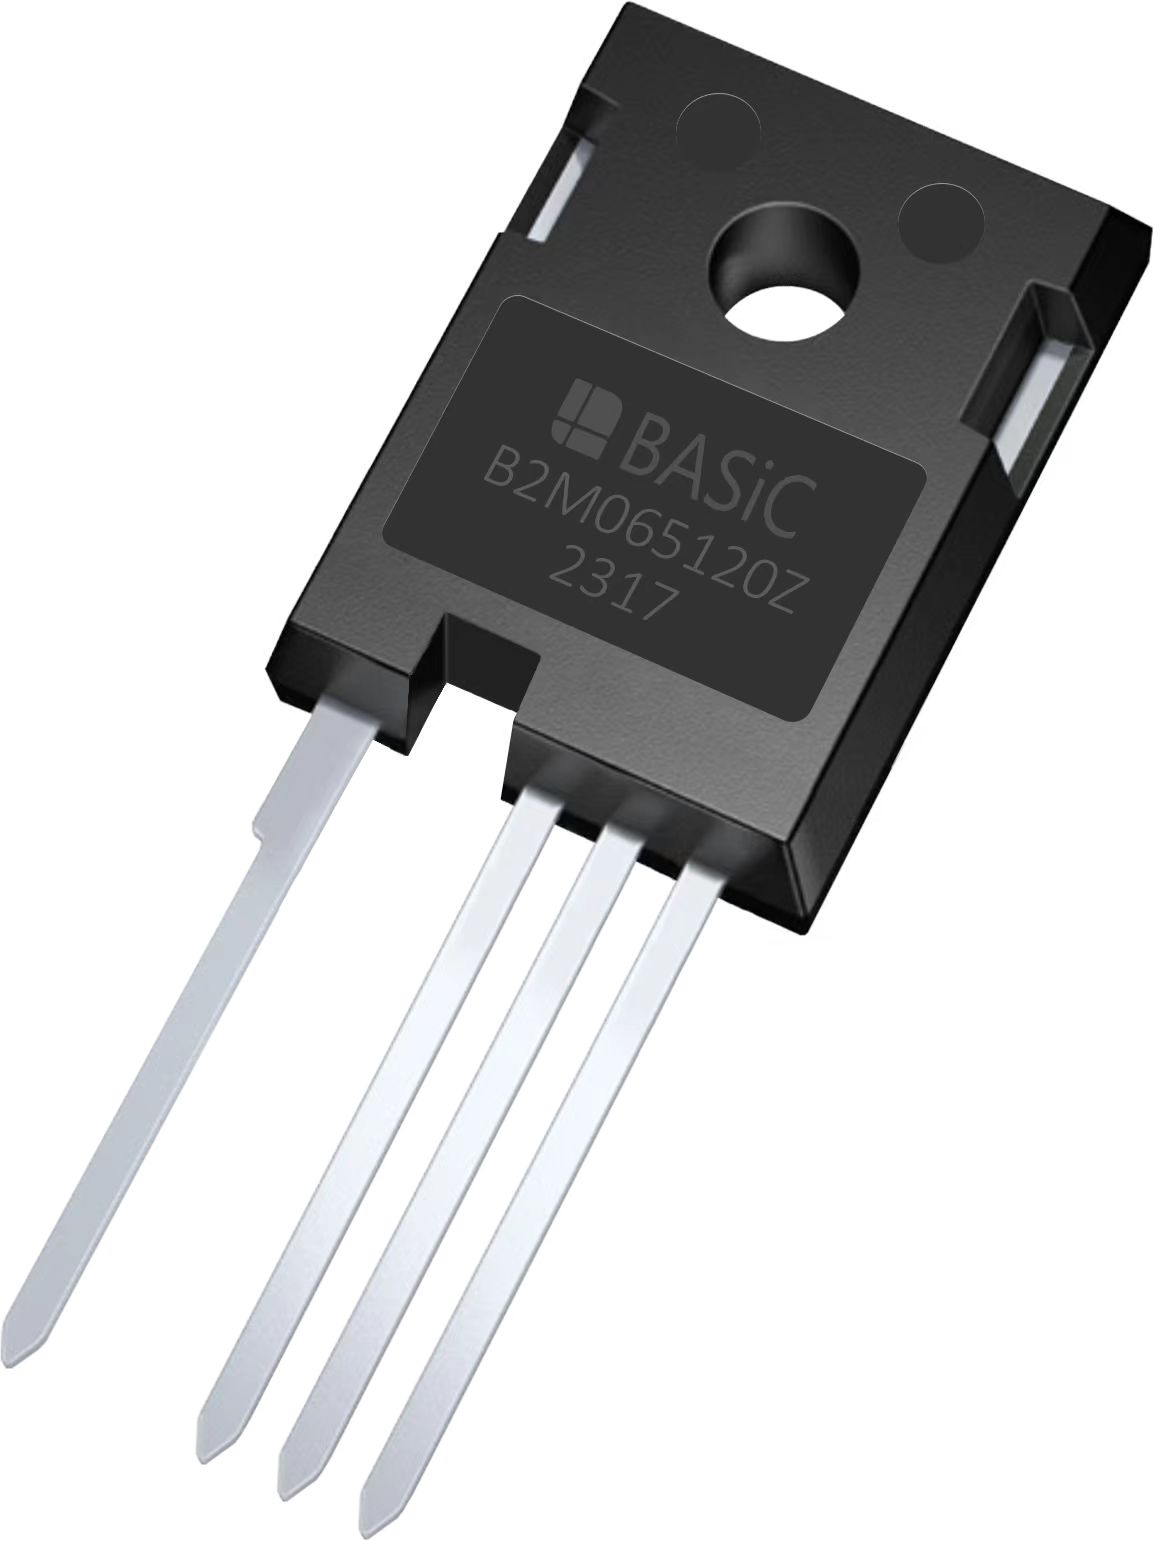 适用于光逆变器及光储一体机的国产高可靠性碳化硅(SiC)MOSFET